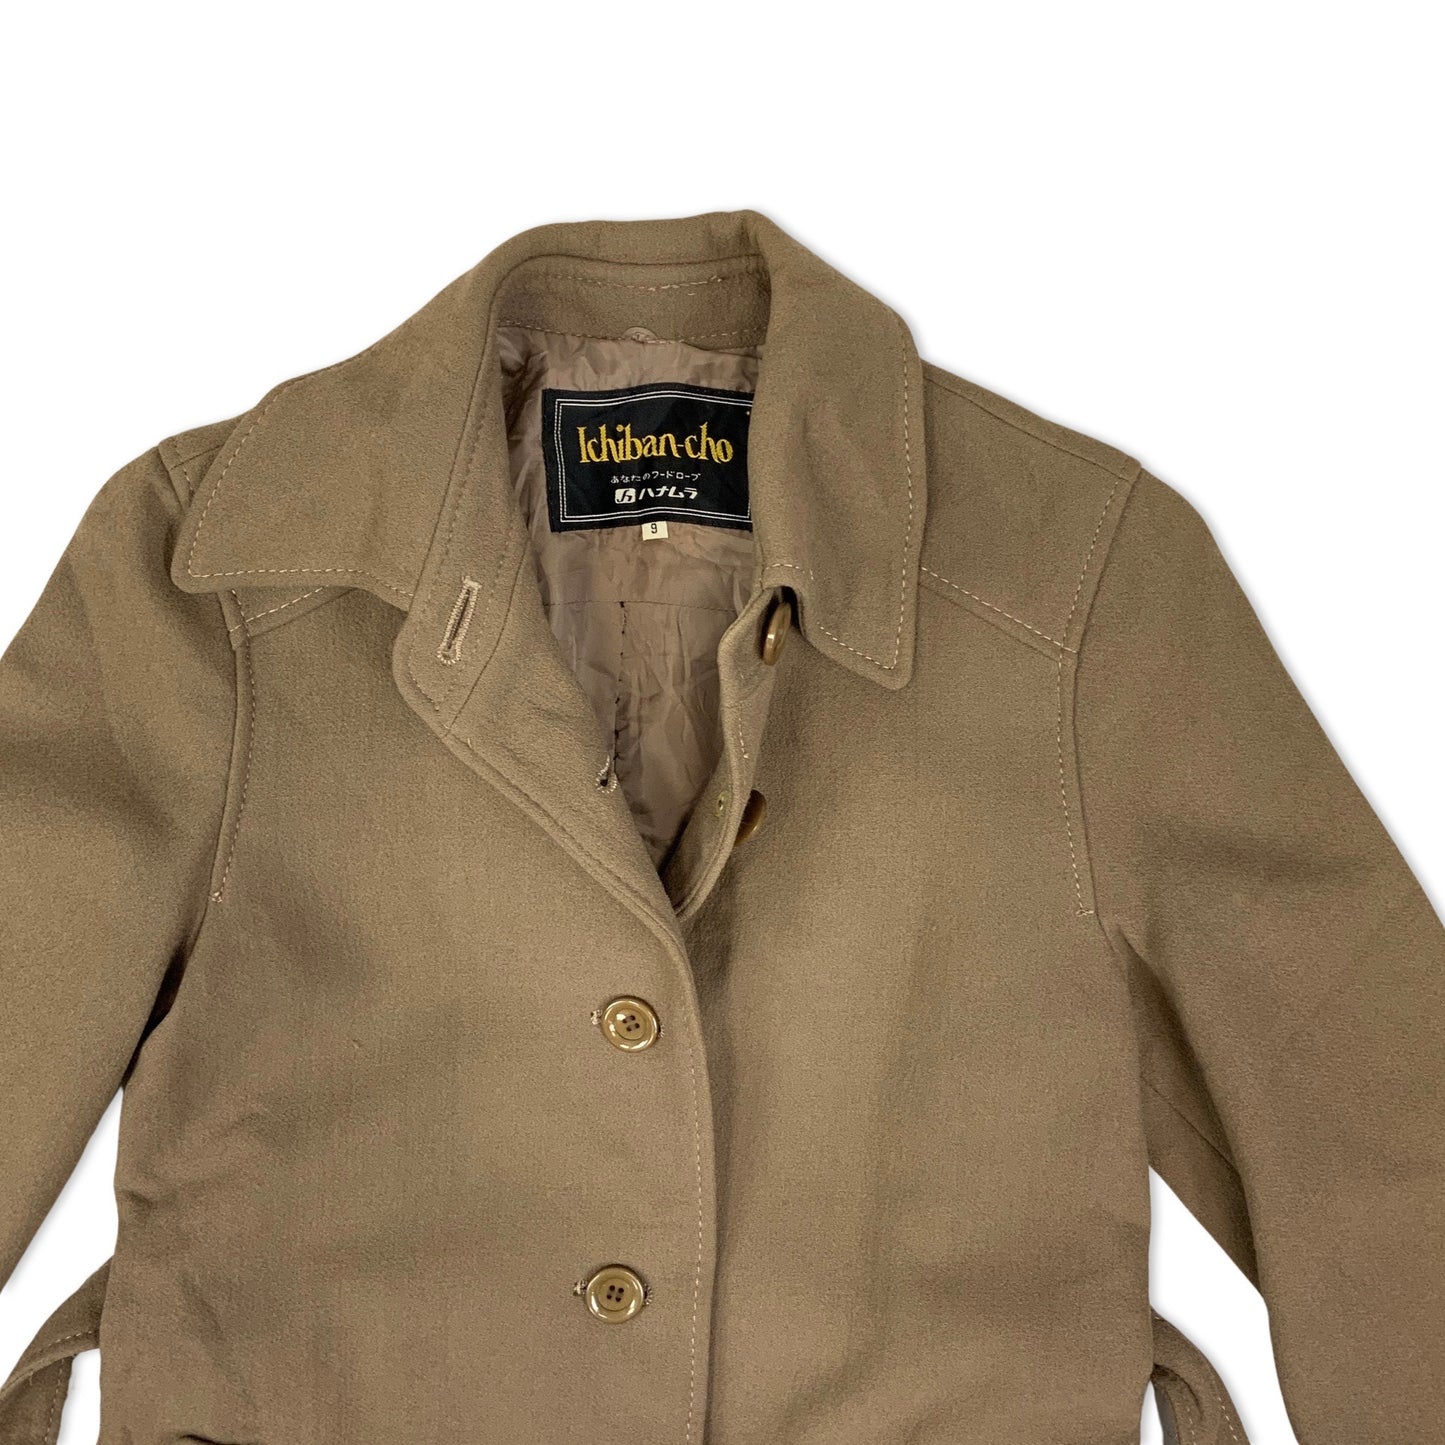 Vintage Brown Ladies' Belted Trench Coat Brown 6 8